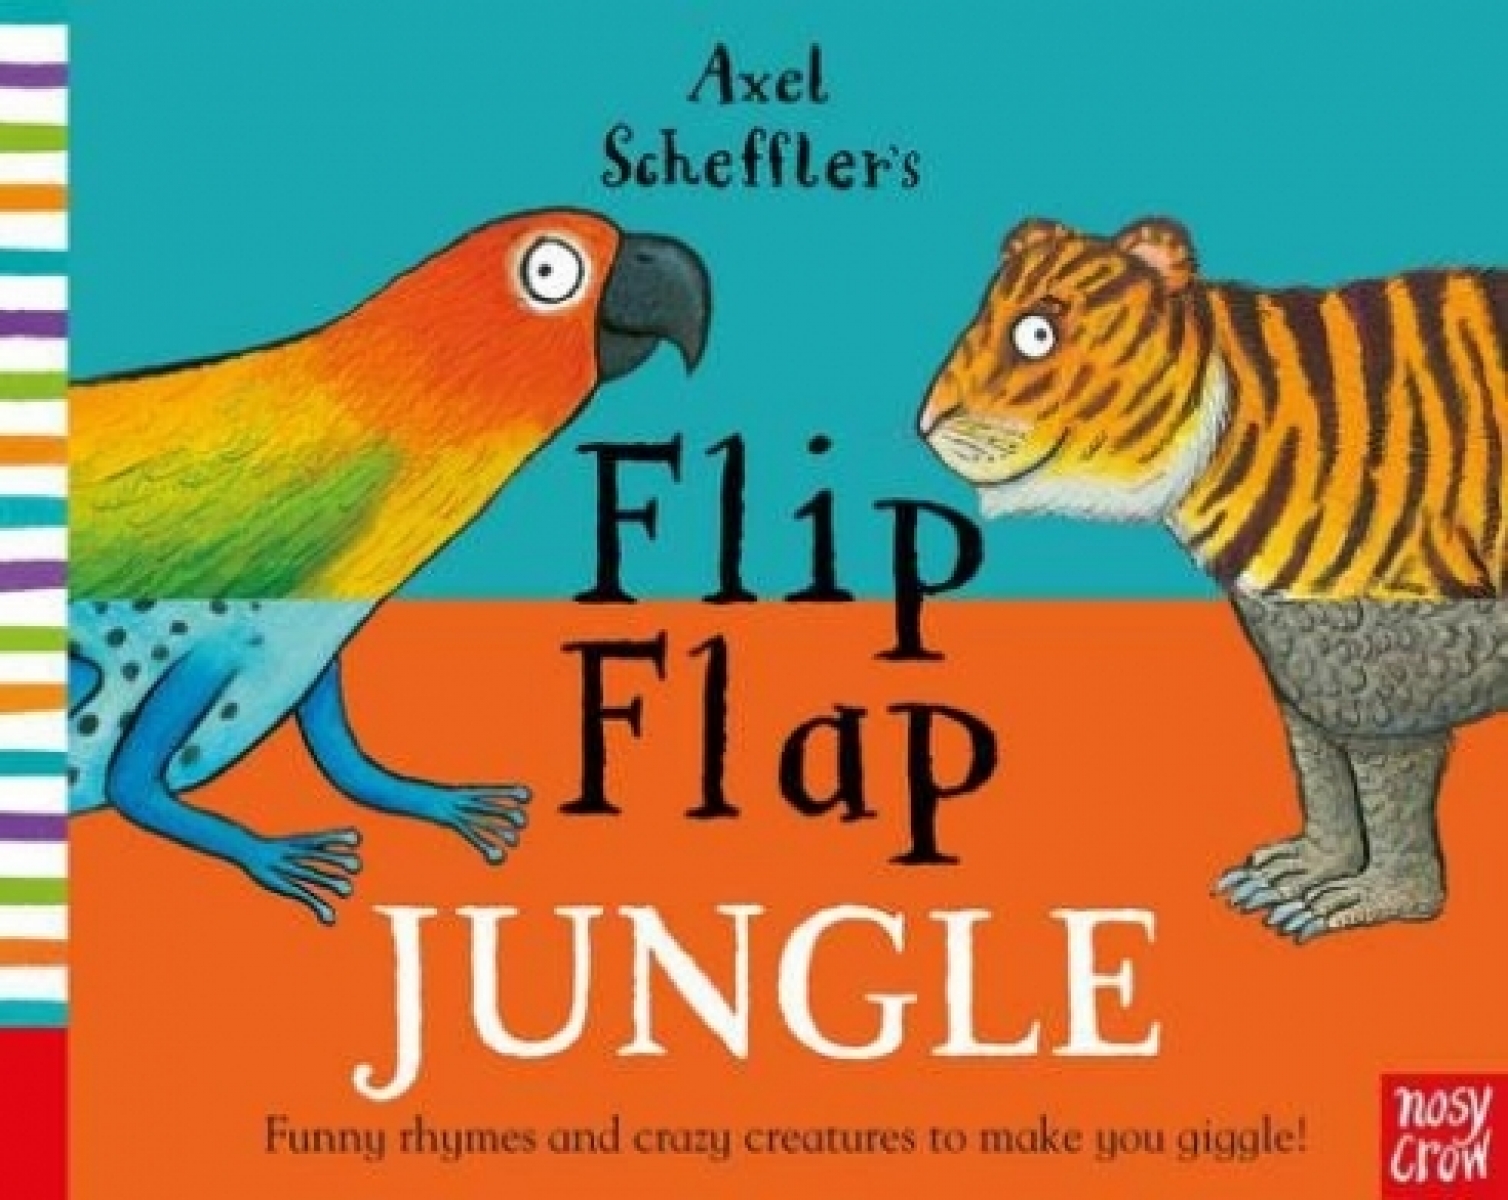 Scheffler Axel Axel Scheffler's Flip Flap Jungle 